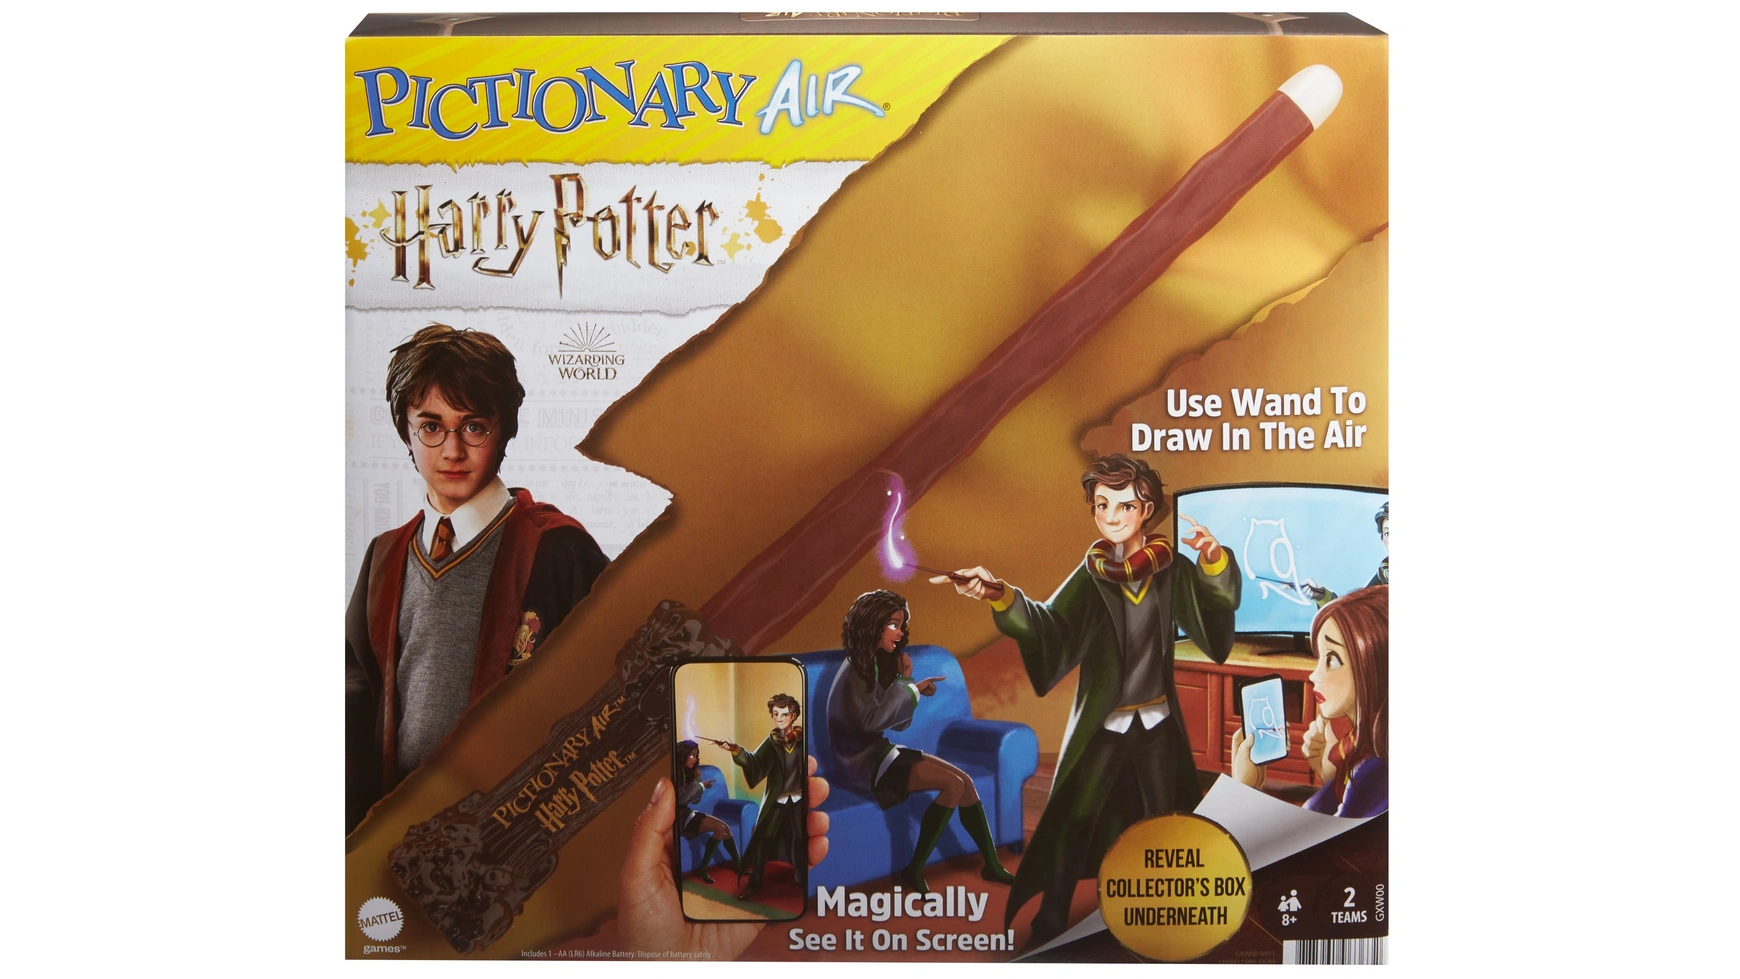 цена Mattel Games Pictionary Air Harry Potter, семейная игра, игра для рисования